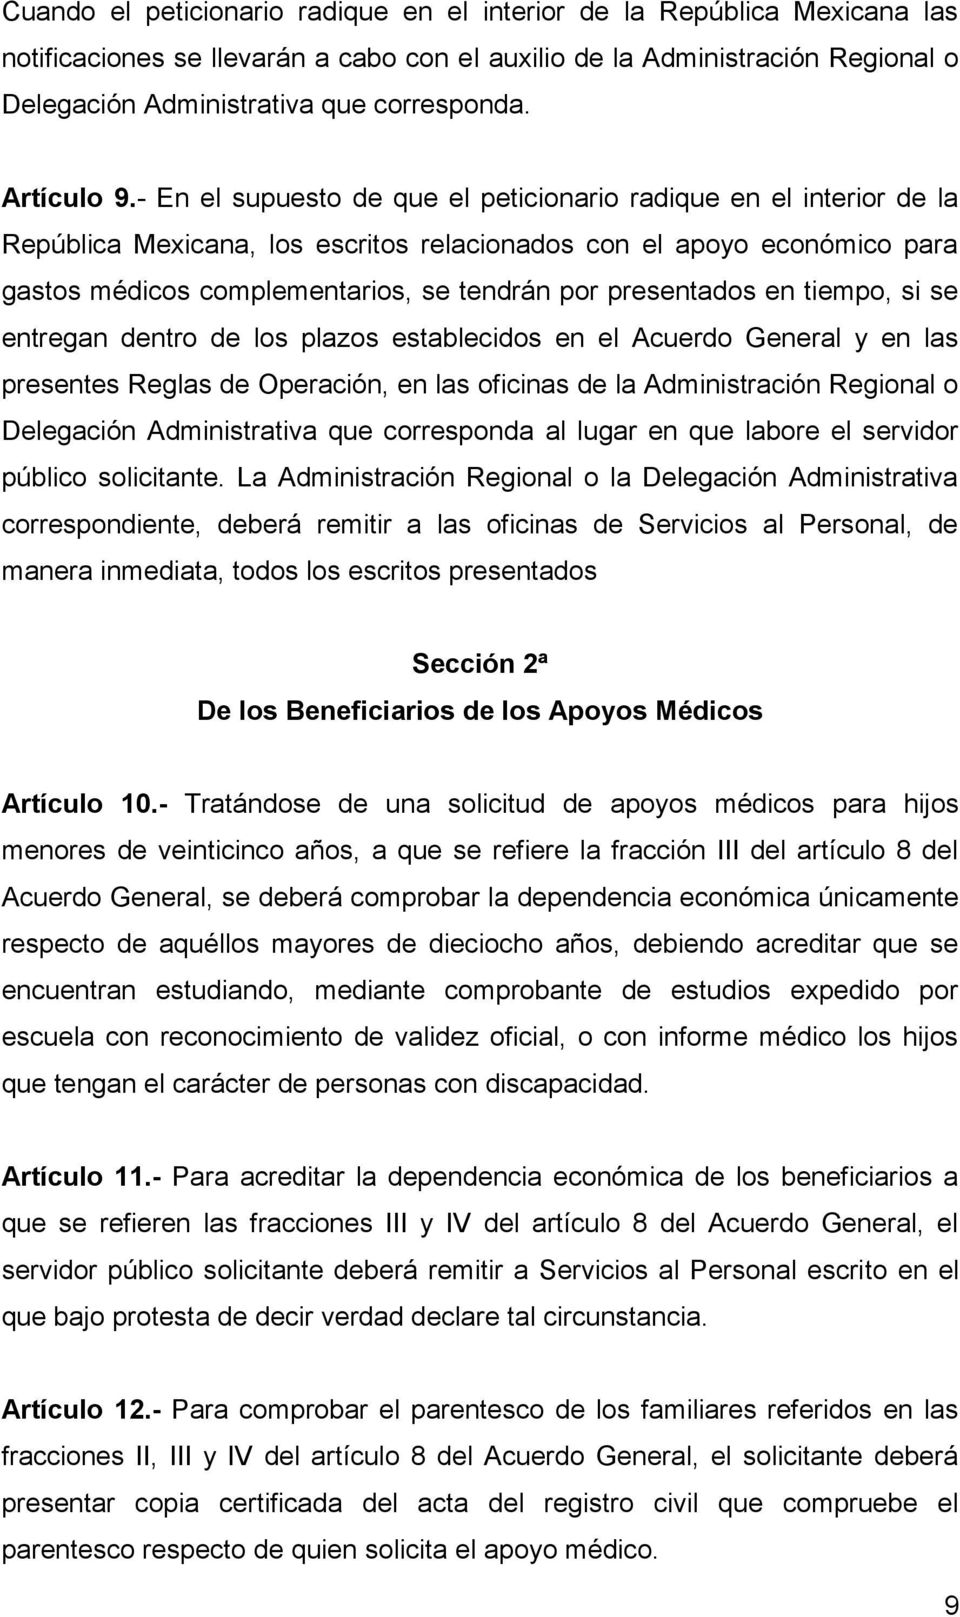 - En el supuesto de que el peticionario radique en el interior de la República Mexicana, los escritos relacionados con el apoyo económico para gastos médicos complementarios, se tendrán por